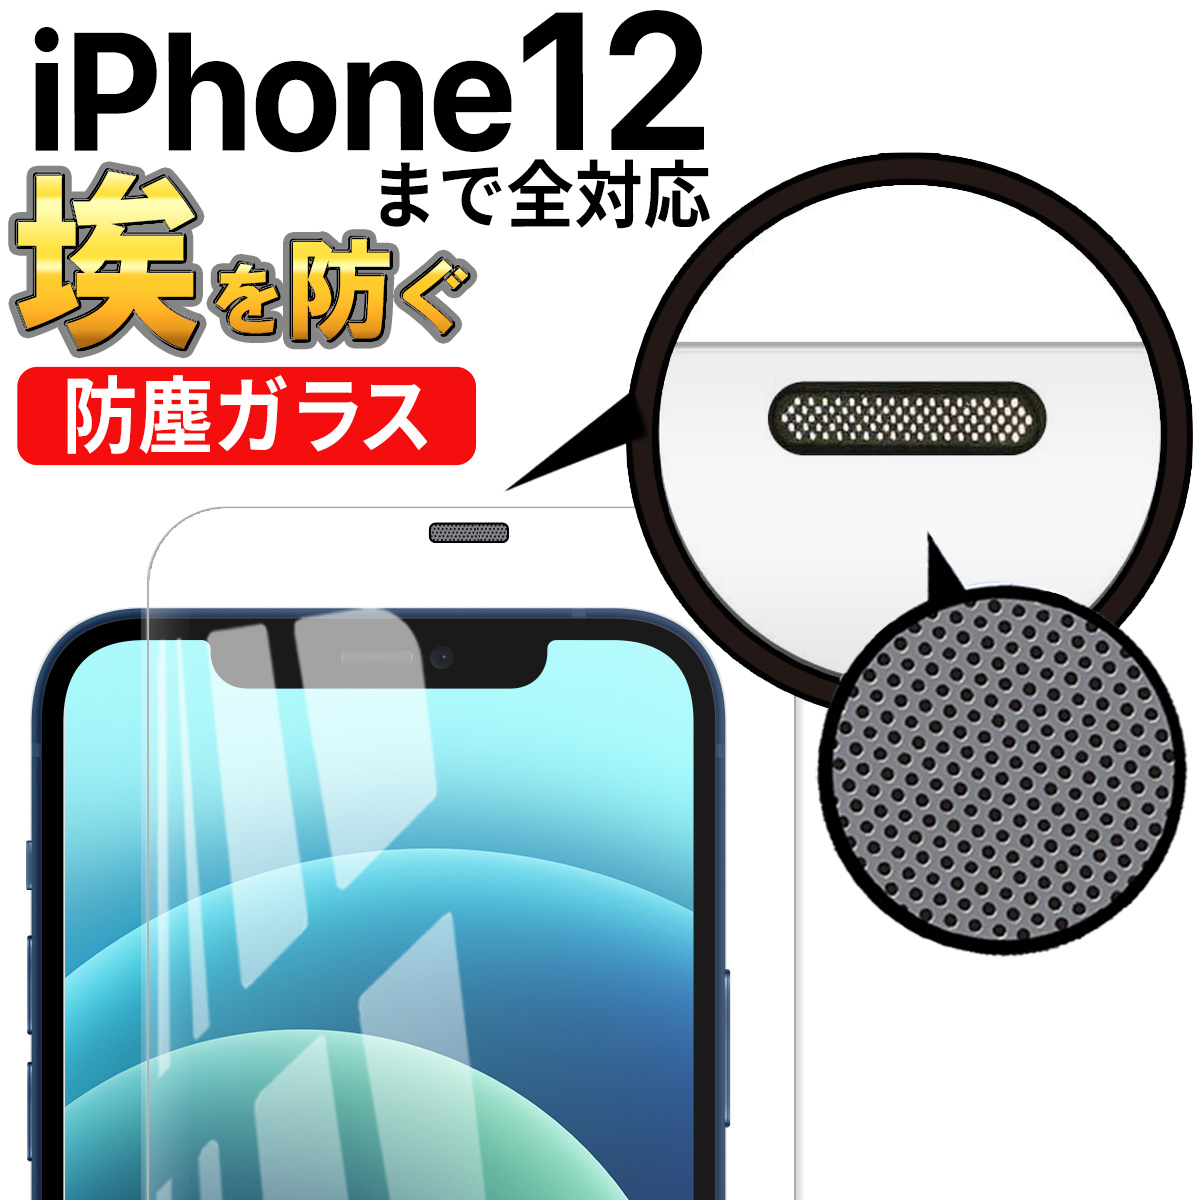 iPhone 12 ガラス フィルム アイフォン Pro mini ProMax 全面 保護 ガード 埃防止 スピーカーガード 画面 保護 シート ケースに干渉しない フチまで覆う